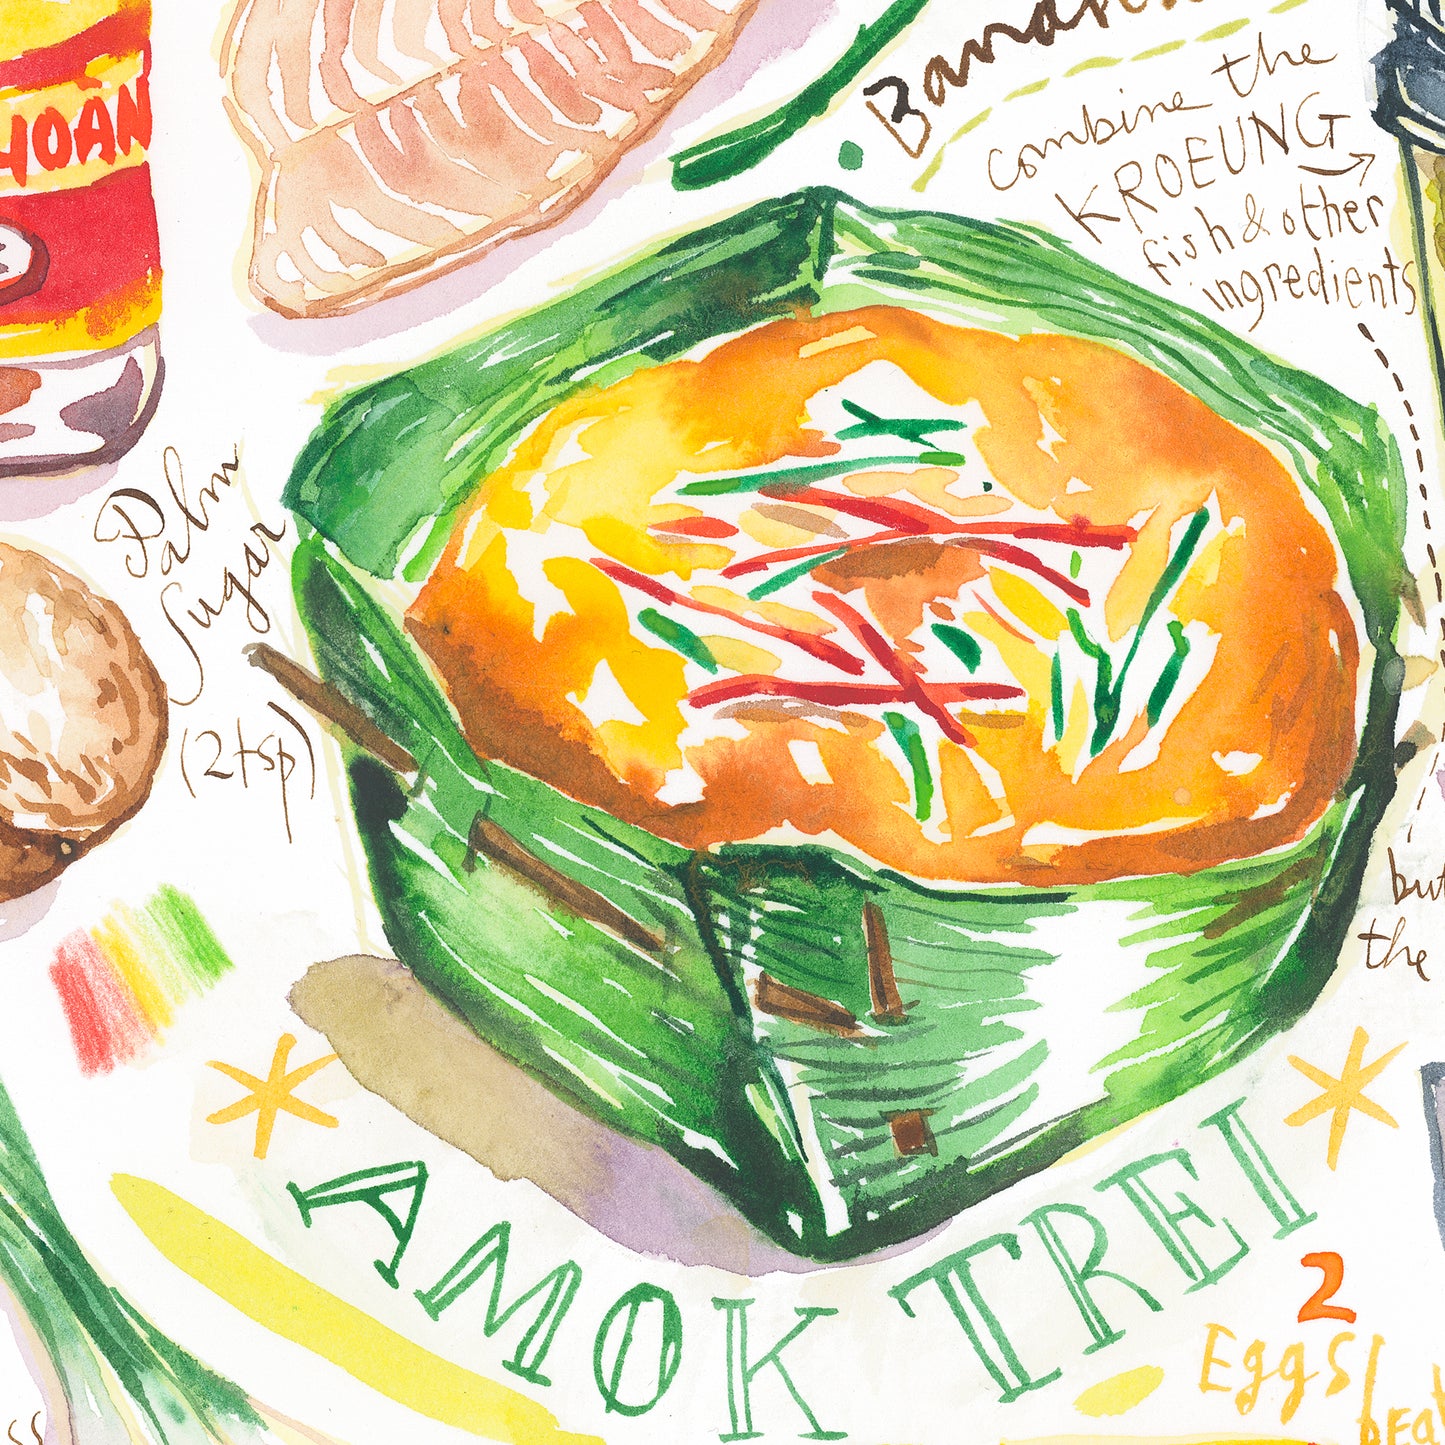 Fish Amok recipe. Original watercolor painting